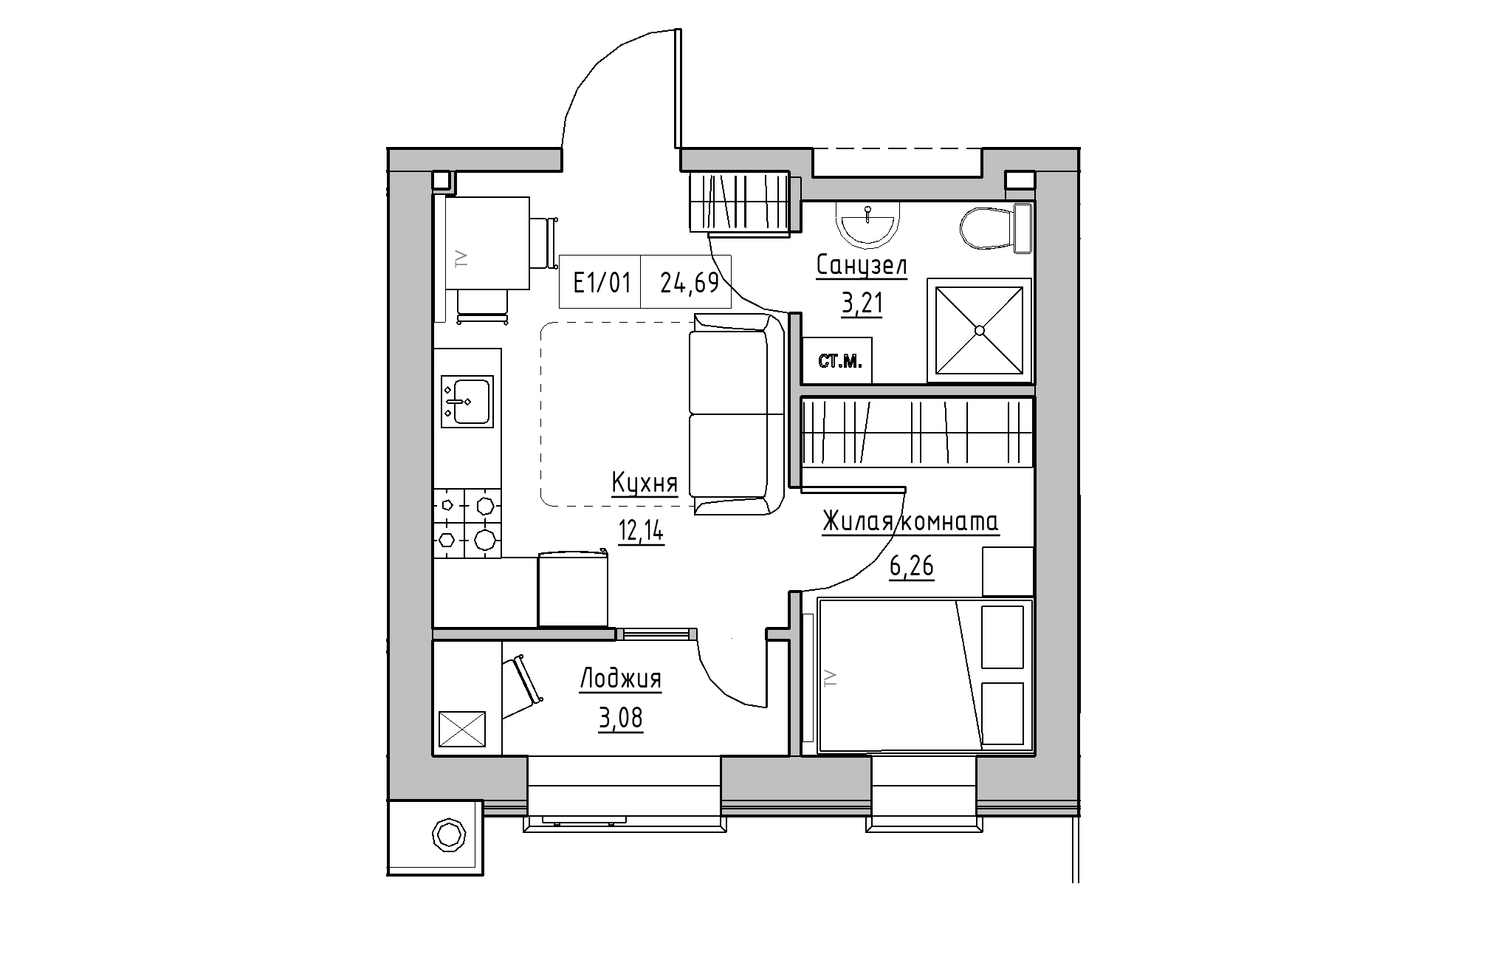 Планировка 1-к квартира площей 24.69м2, KS-013-04/0012.